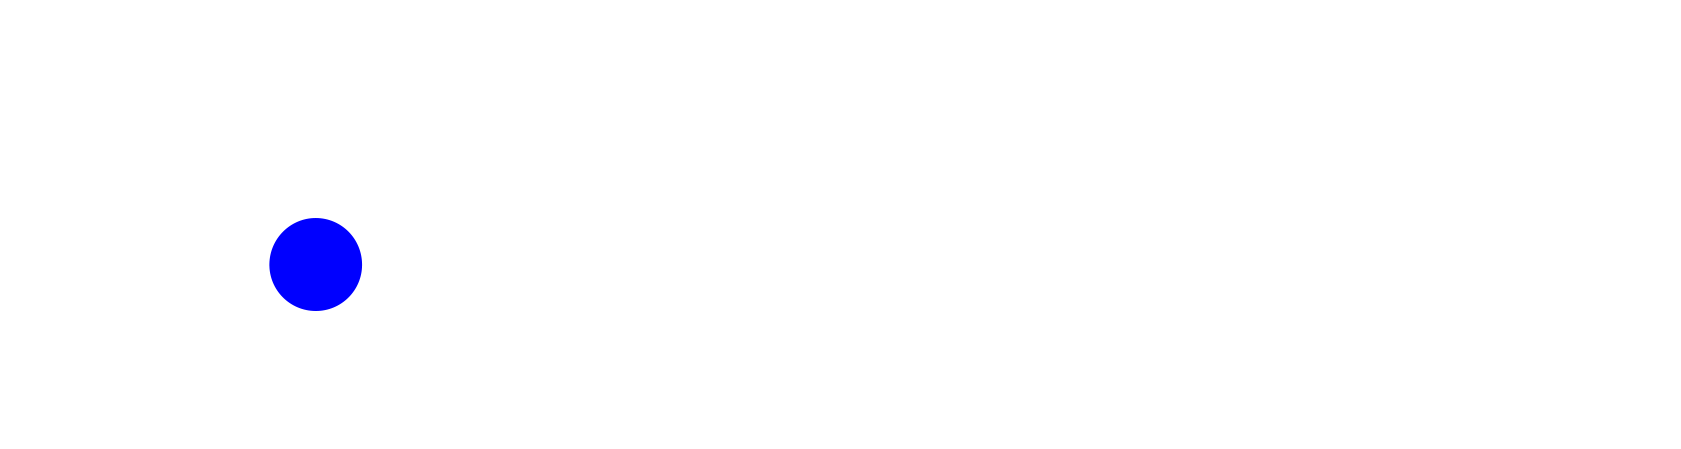 Circles of Dialogue